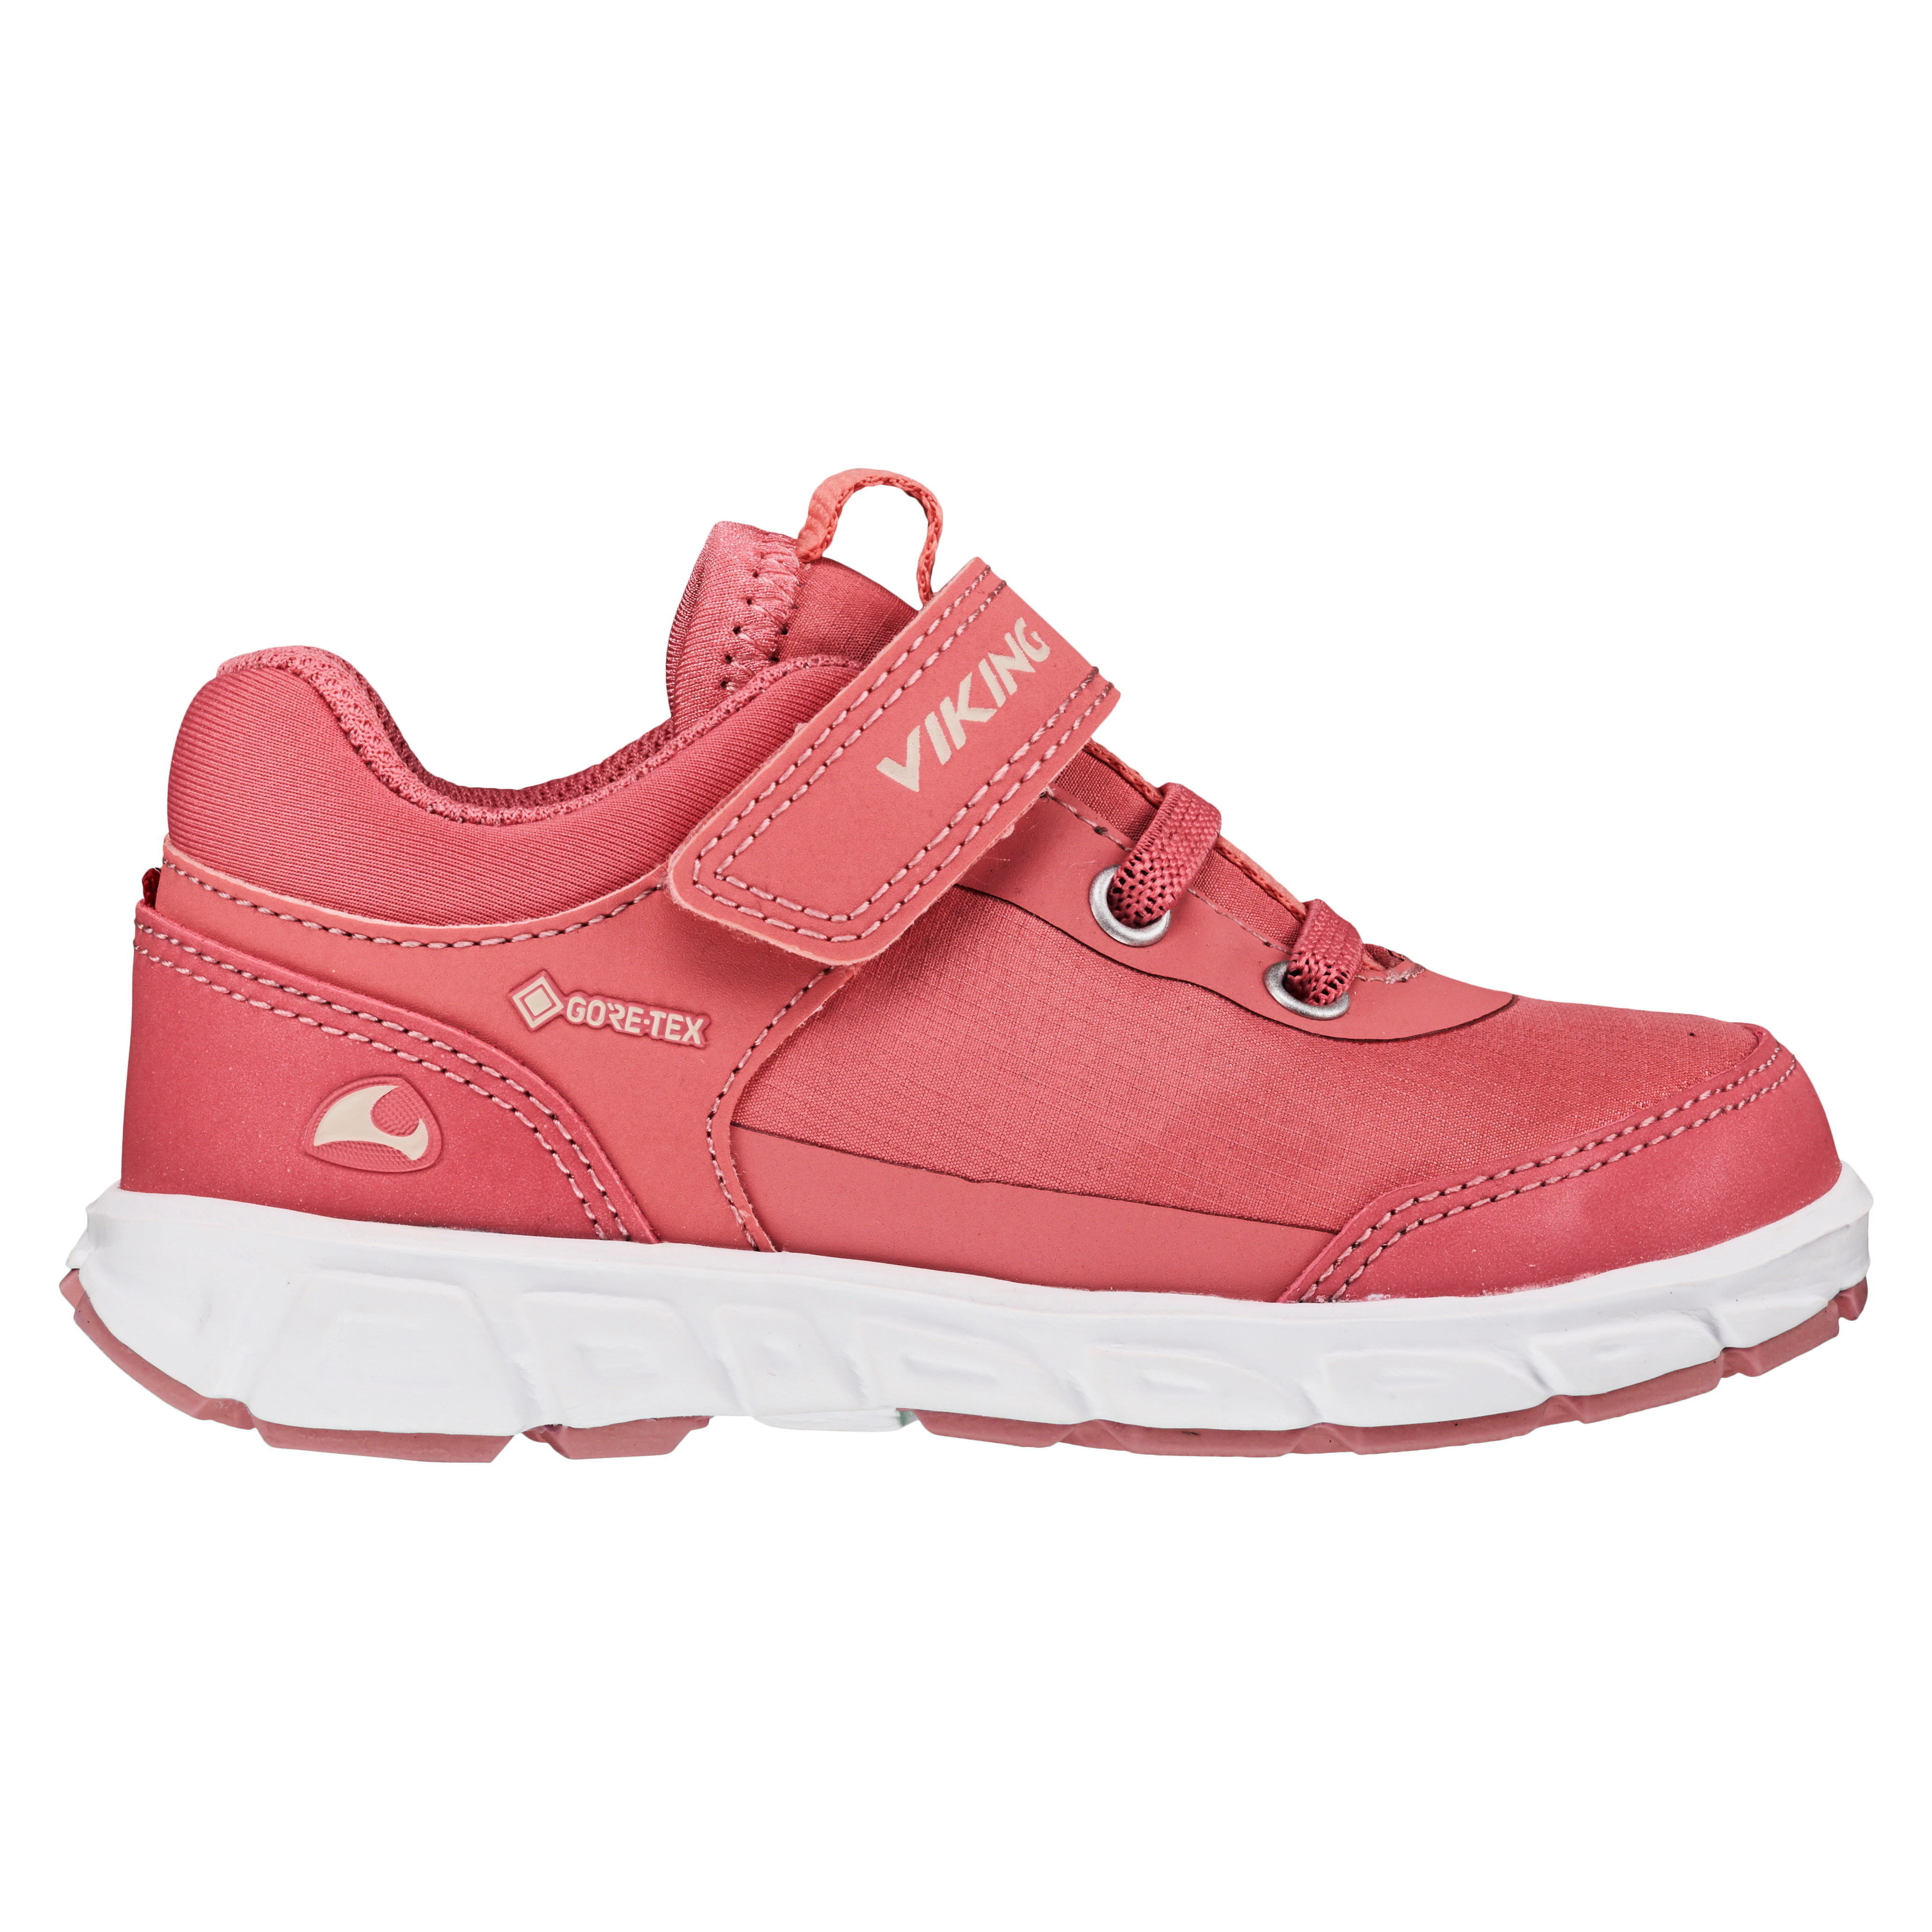 Viking Footwear Kids’ Spectrum R Gore-Tex Pink